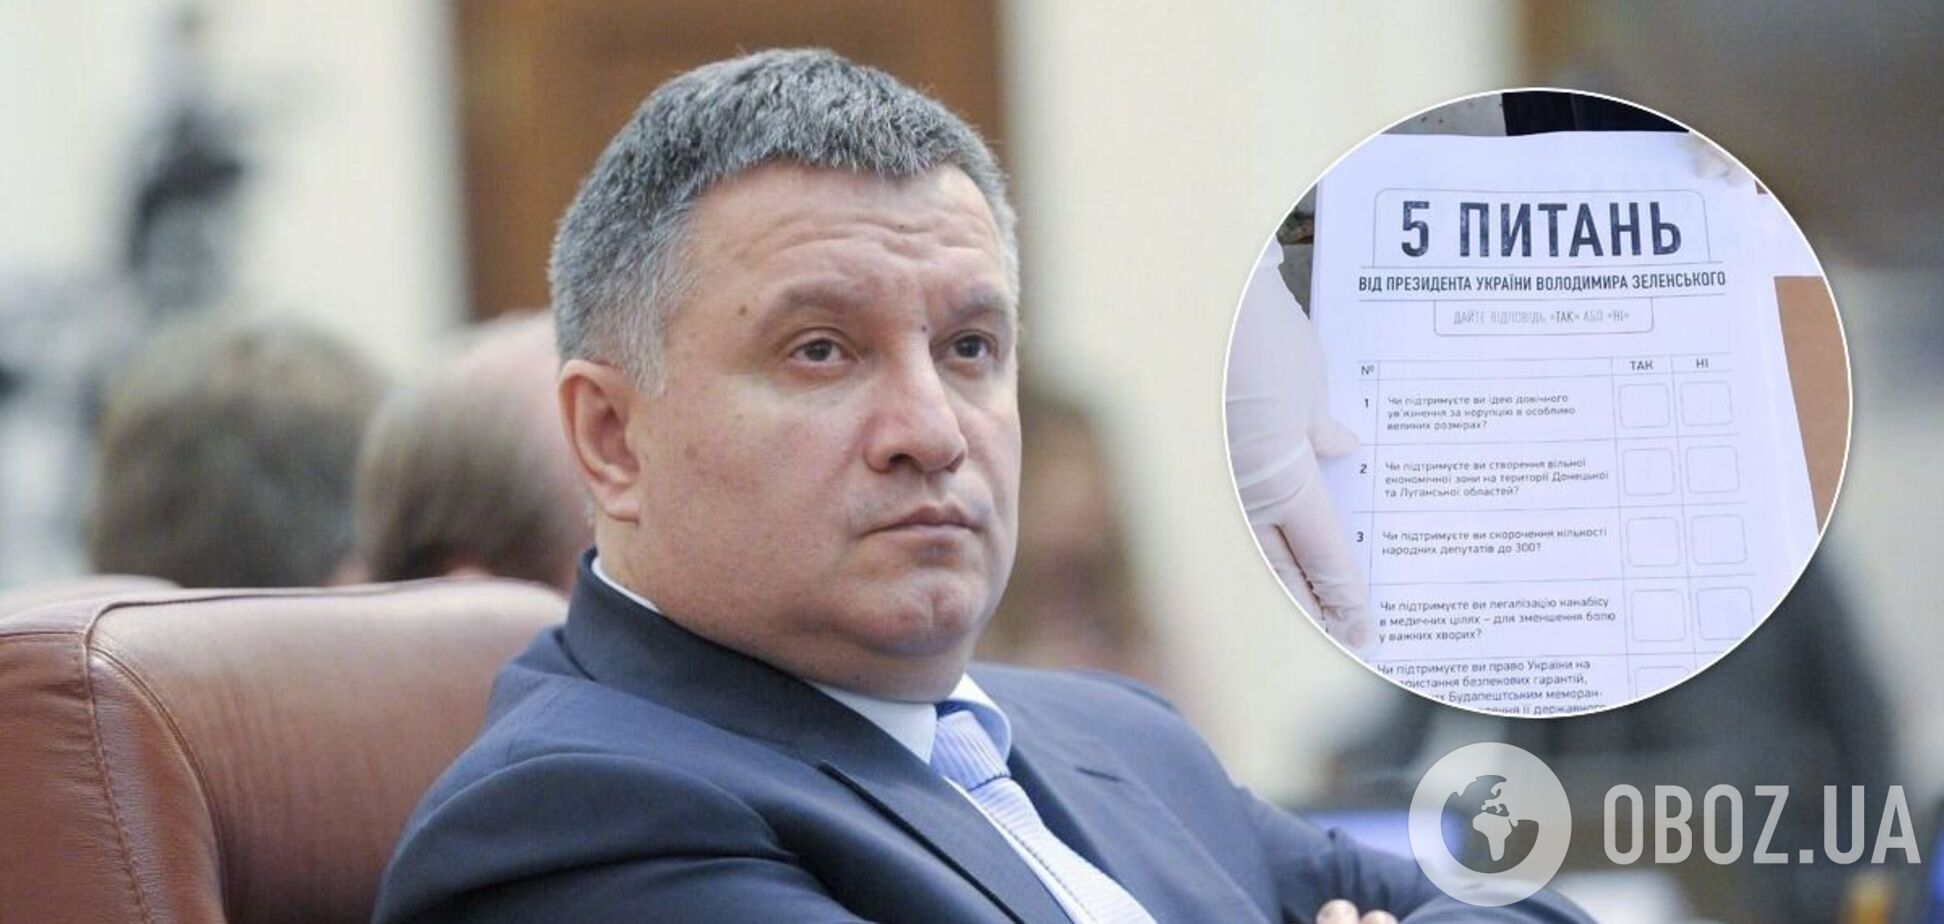 Арсен Аваков заявив, що опитування Зеленського чи не порушує закони України